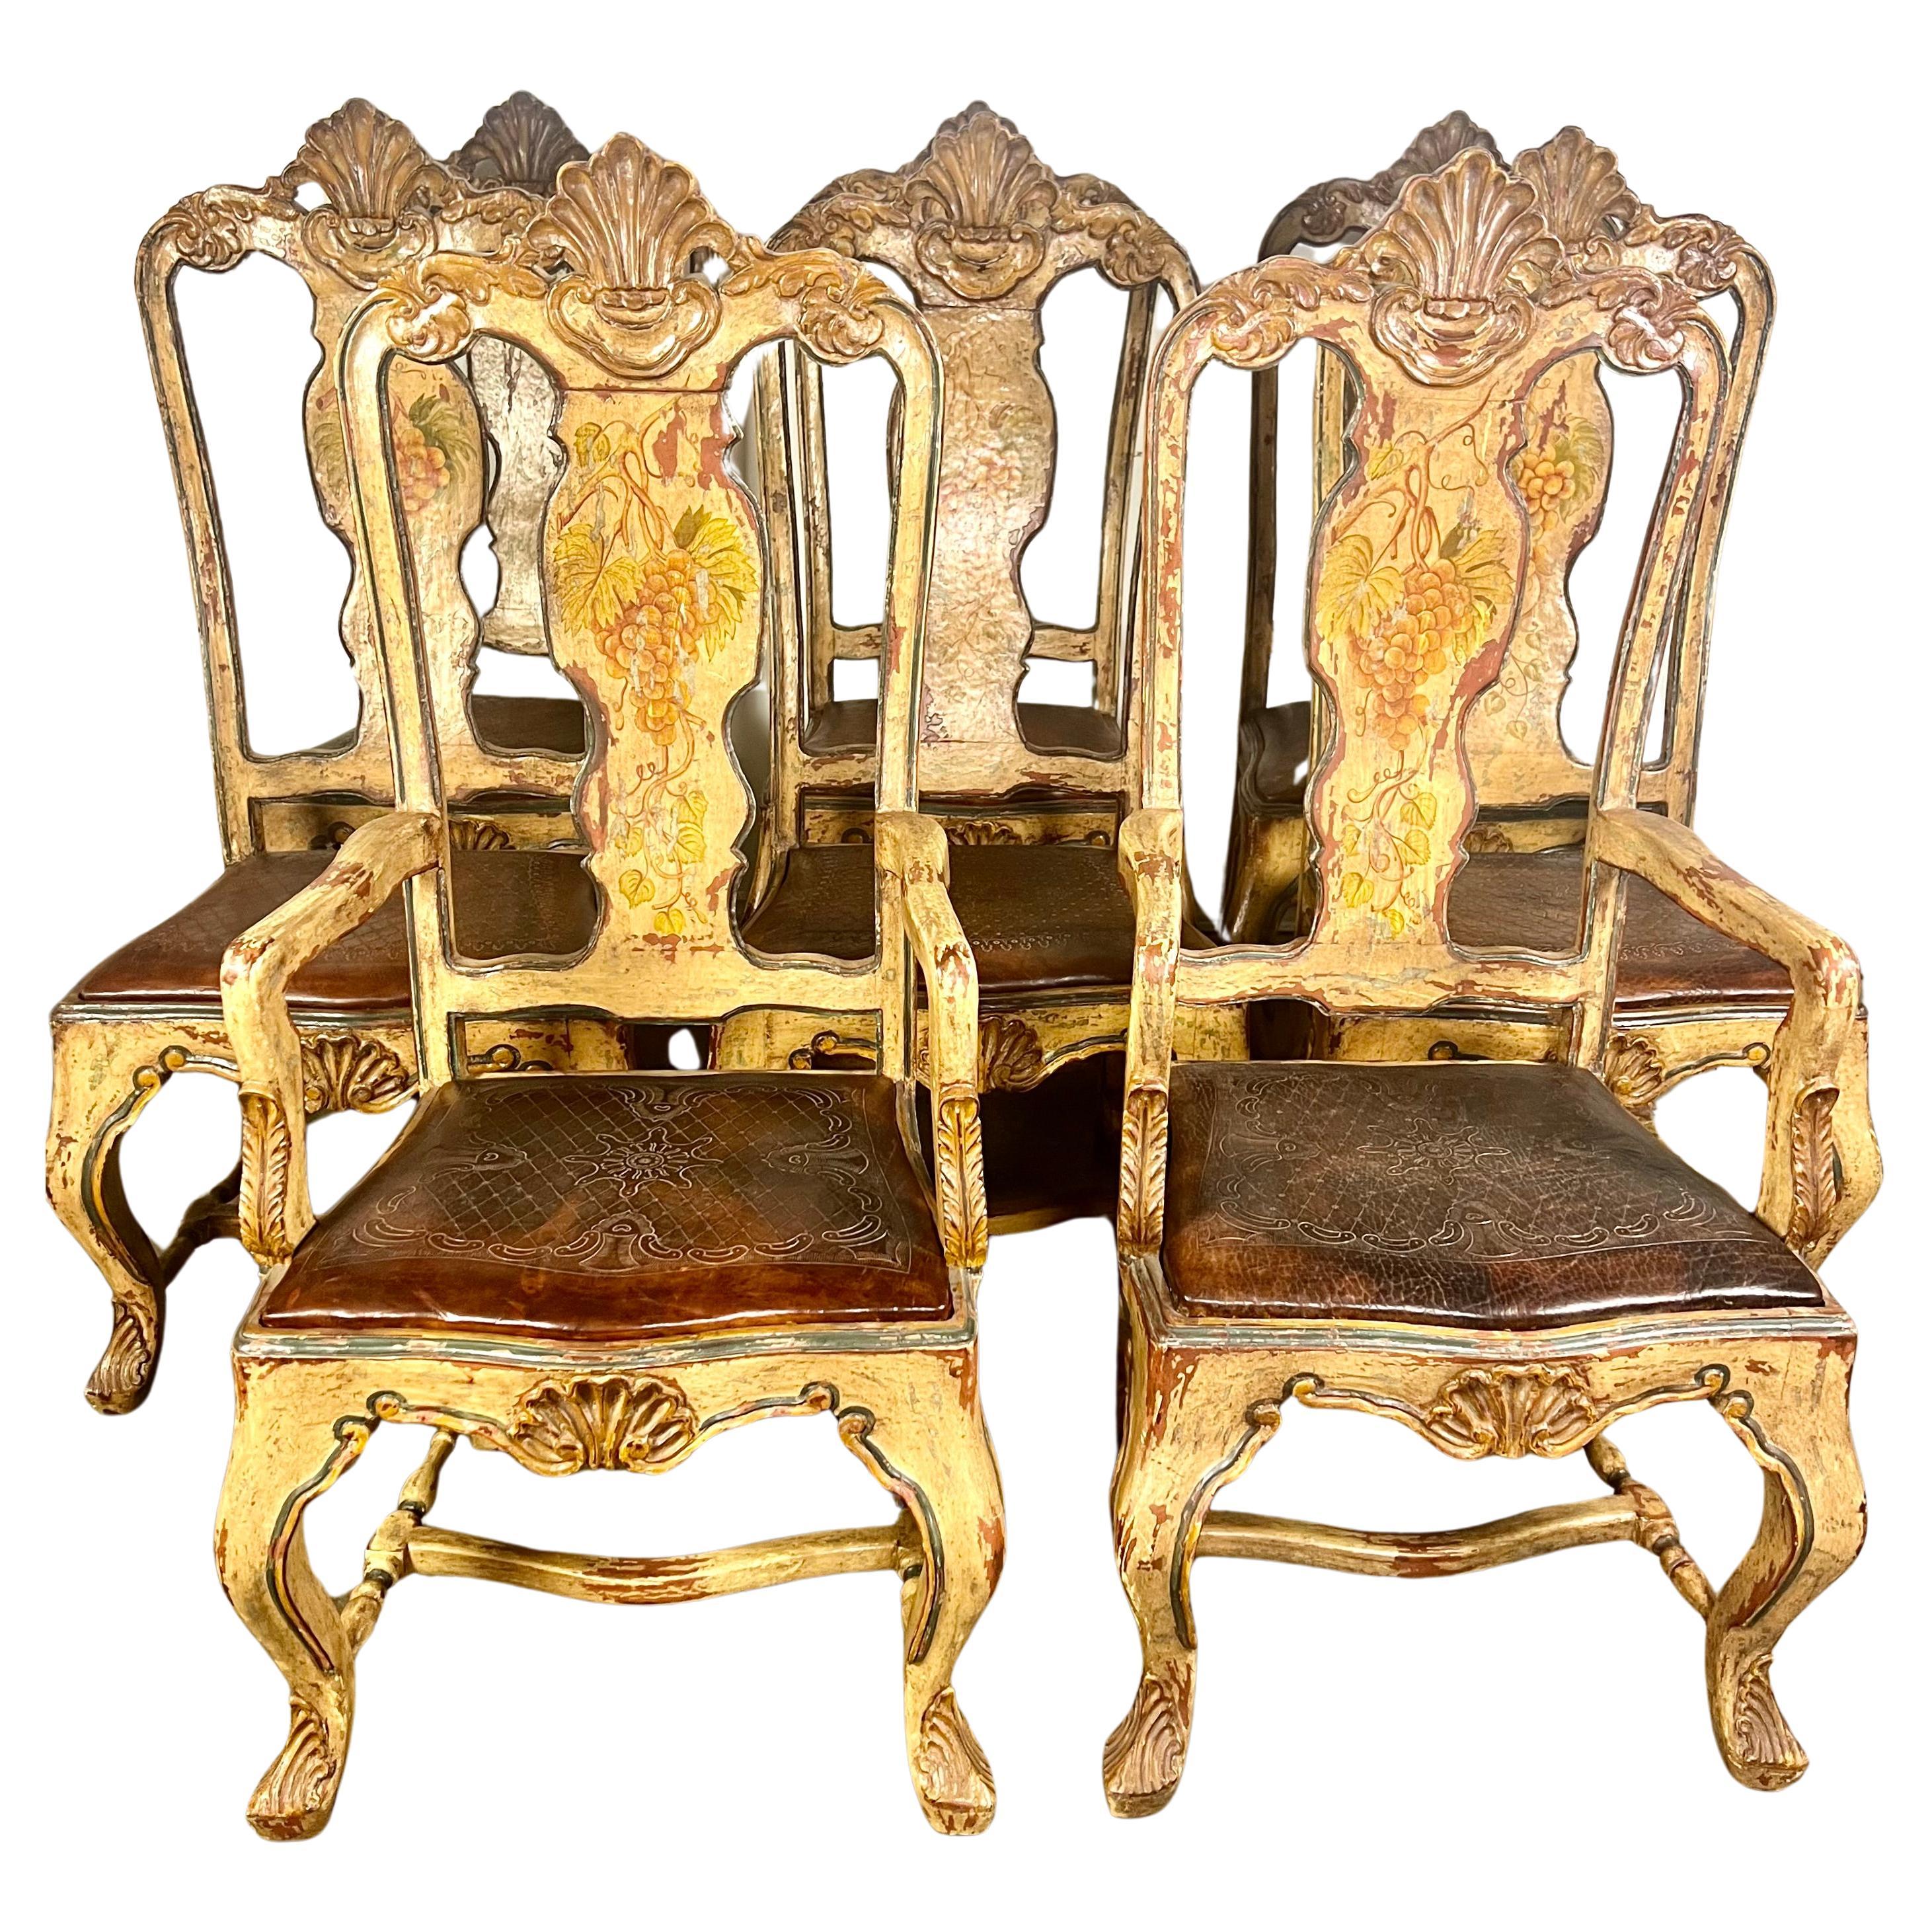 (8) chaises de salle à manger provinciales françaises peintes à la main avec sièges embossés en cuir